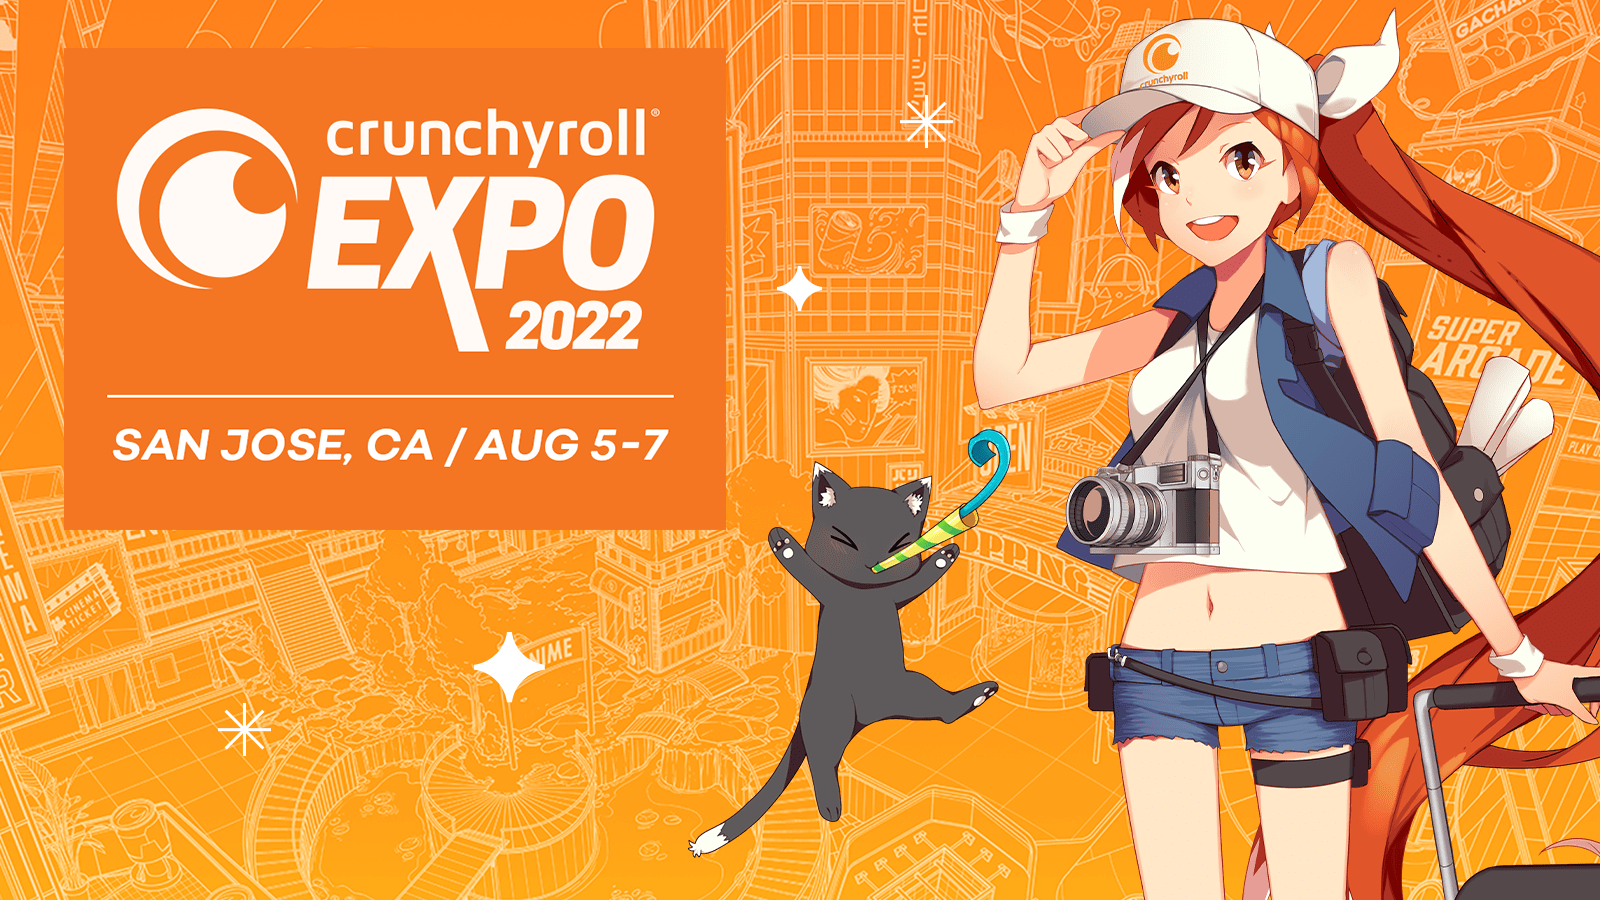 Nhiều thông tin hấp dẫn sẽ được công bố tại sự kiện Crunchyroll Expo 2022